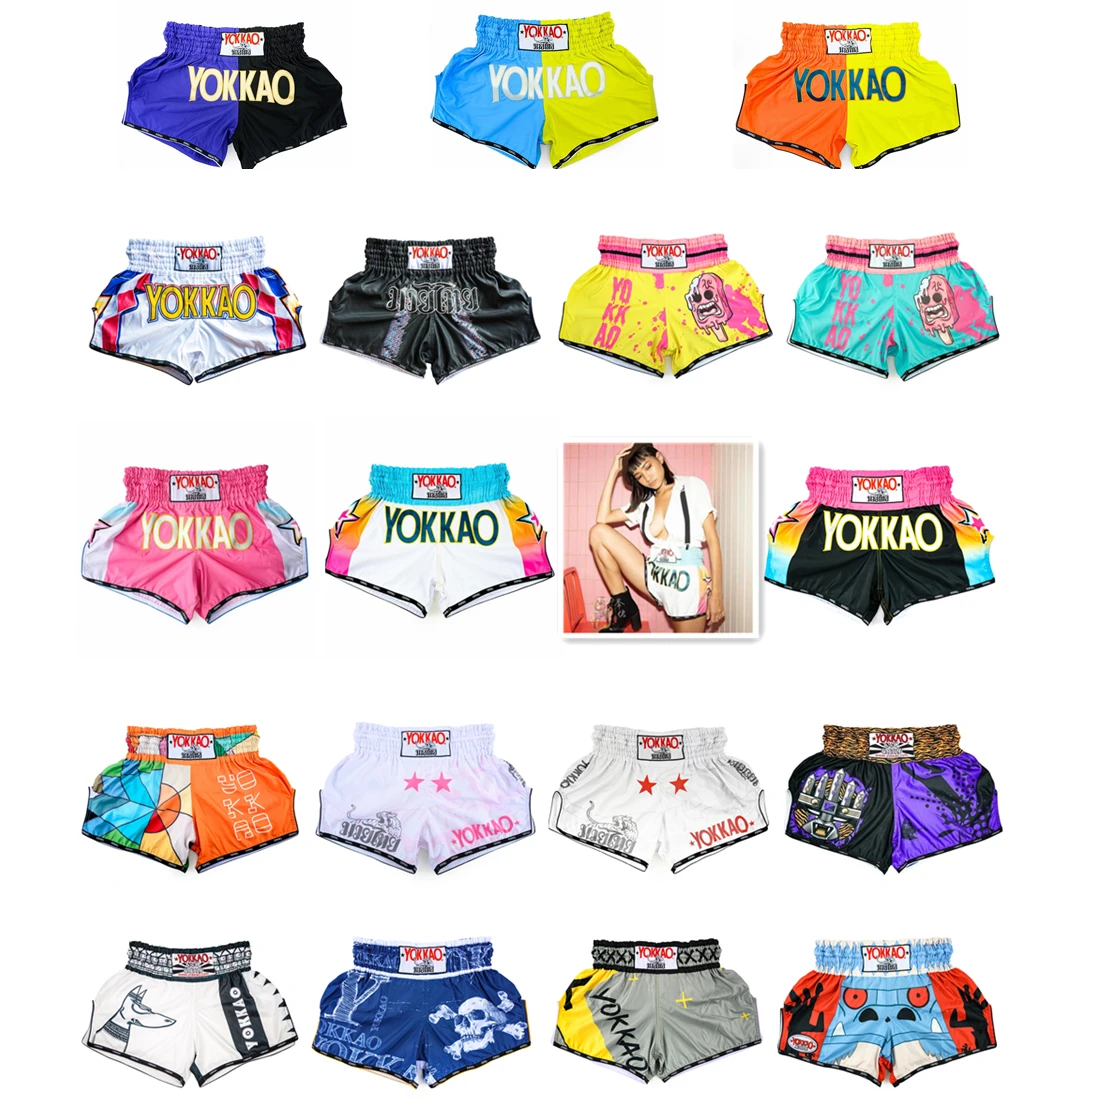 Yokkao-女性用スポーツショーツ,ストリートウェア,通気性,速乾性,ブルー